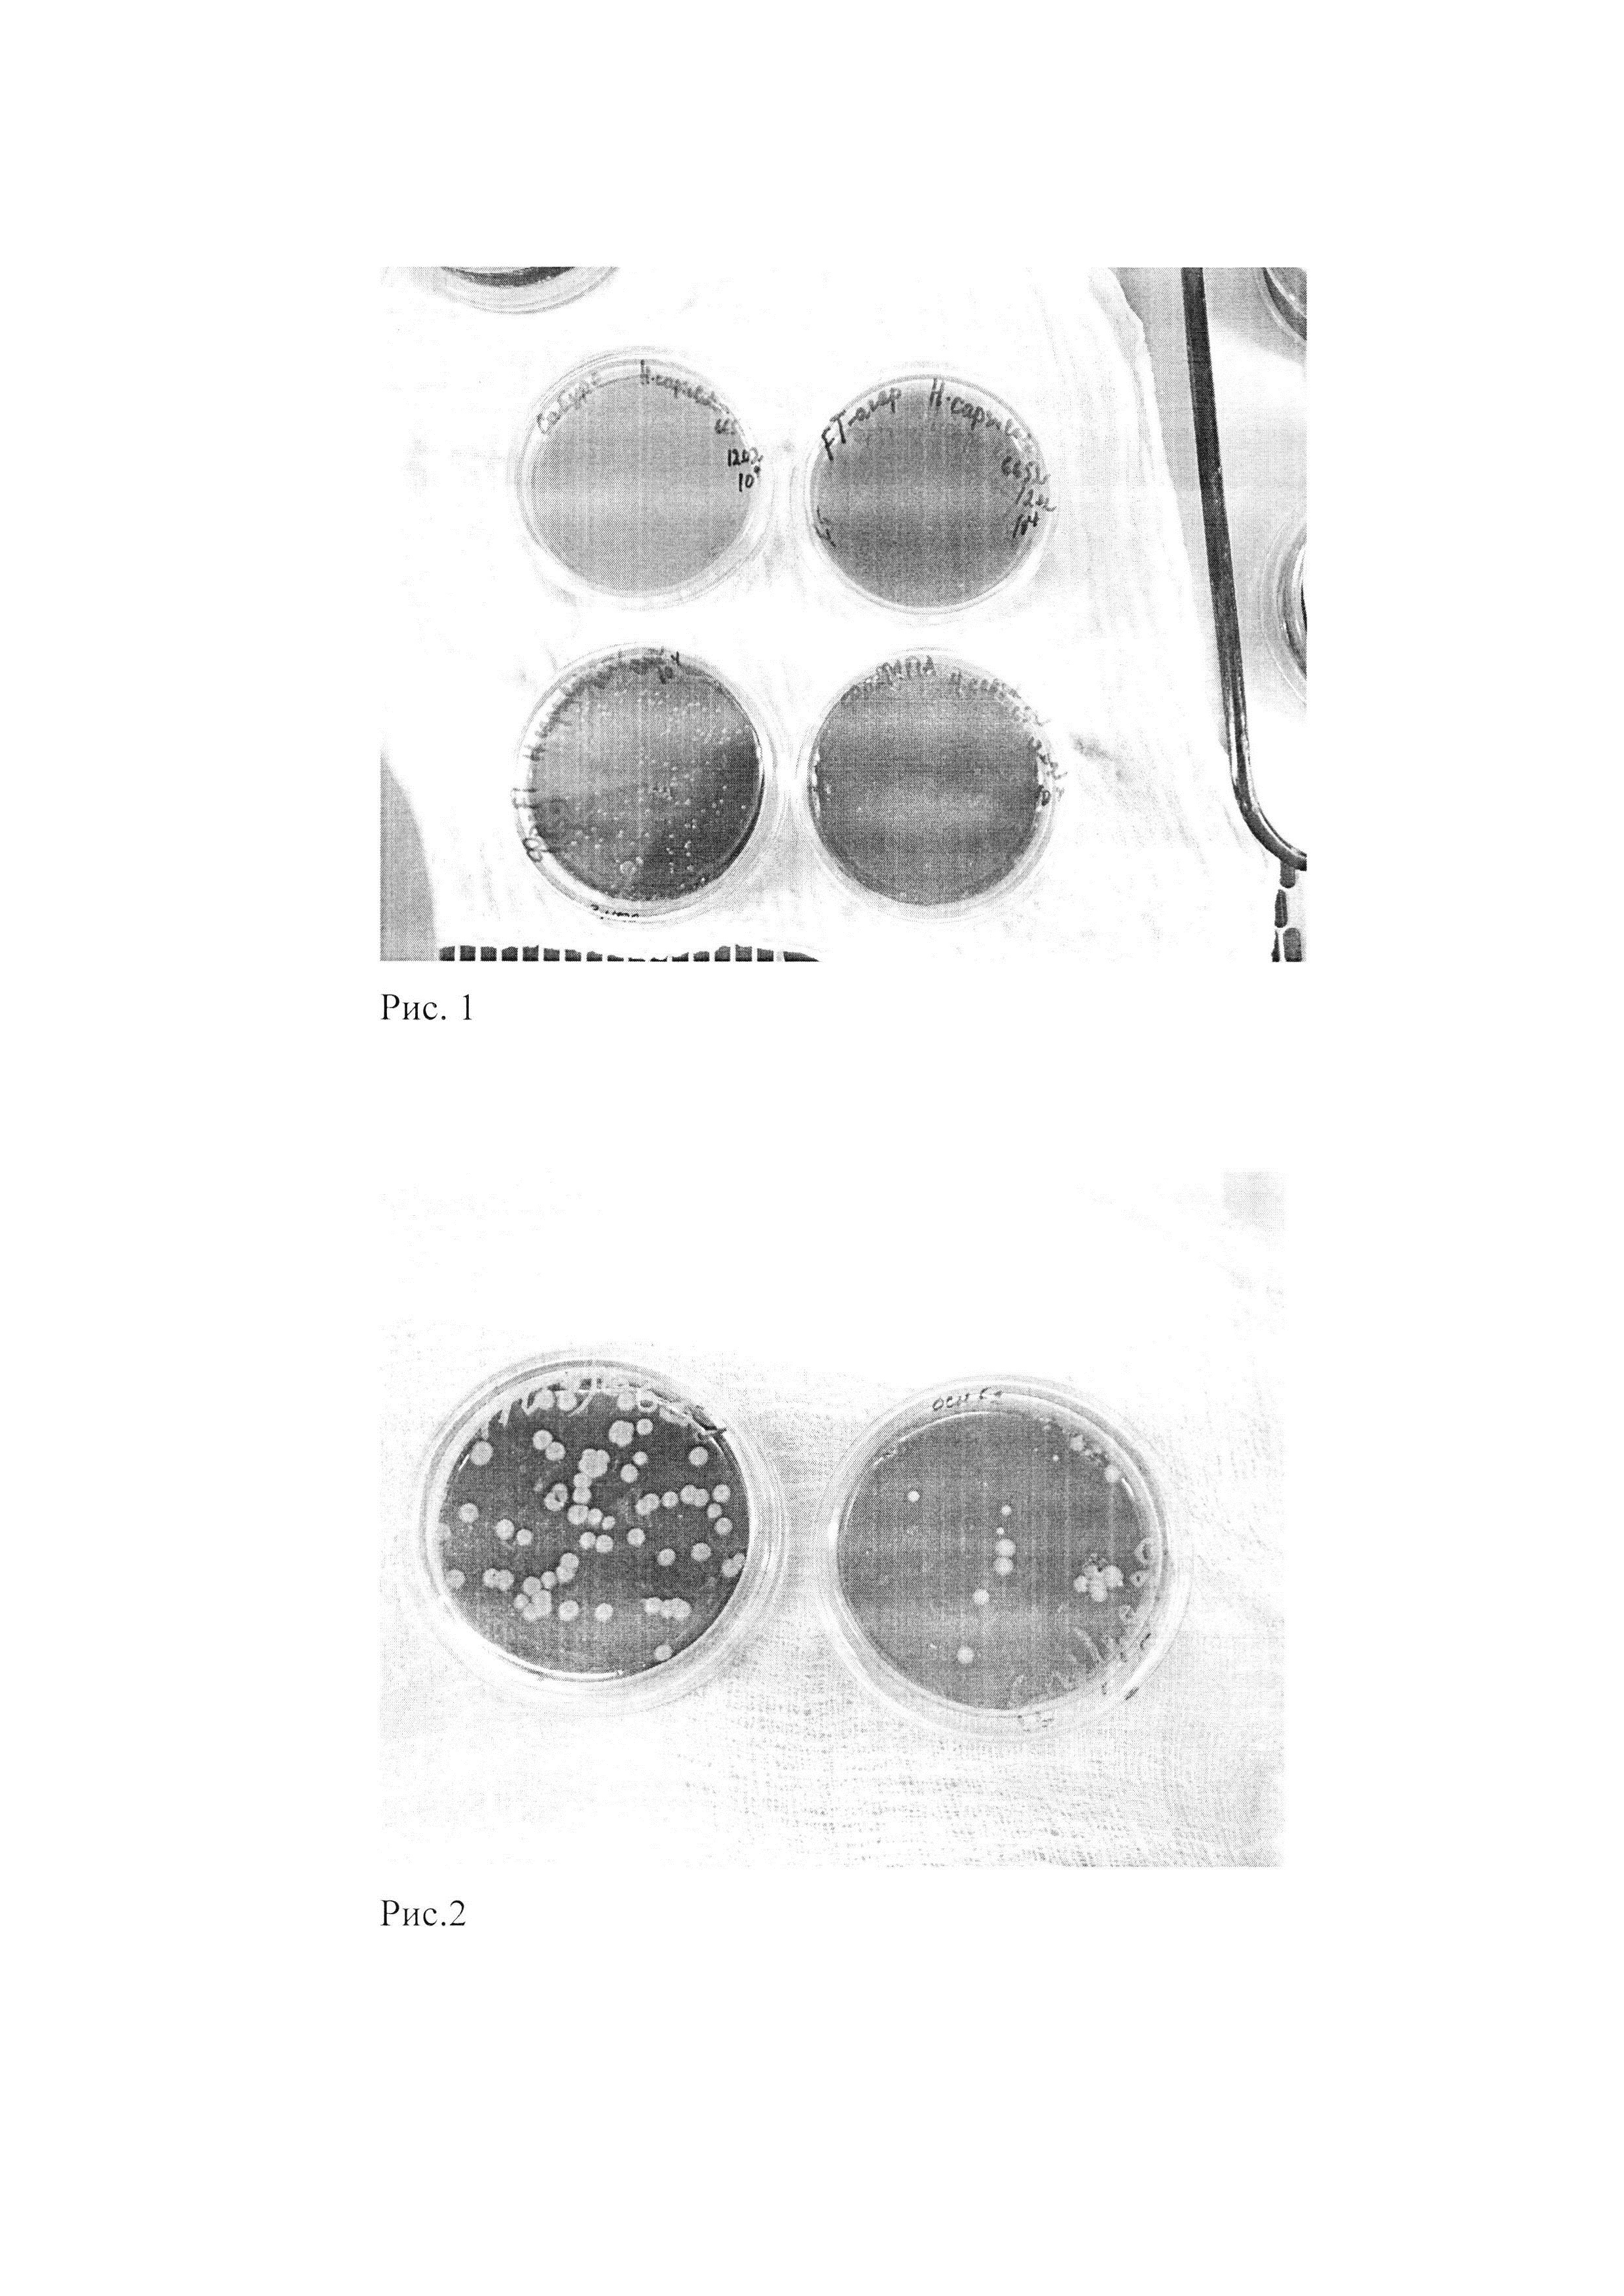 Питательная среда для получения дрожжевых клеток диморфного гриба Histoplasma capsulatum